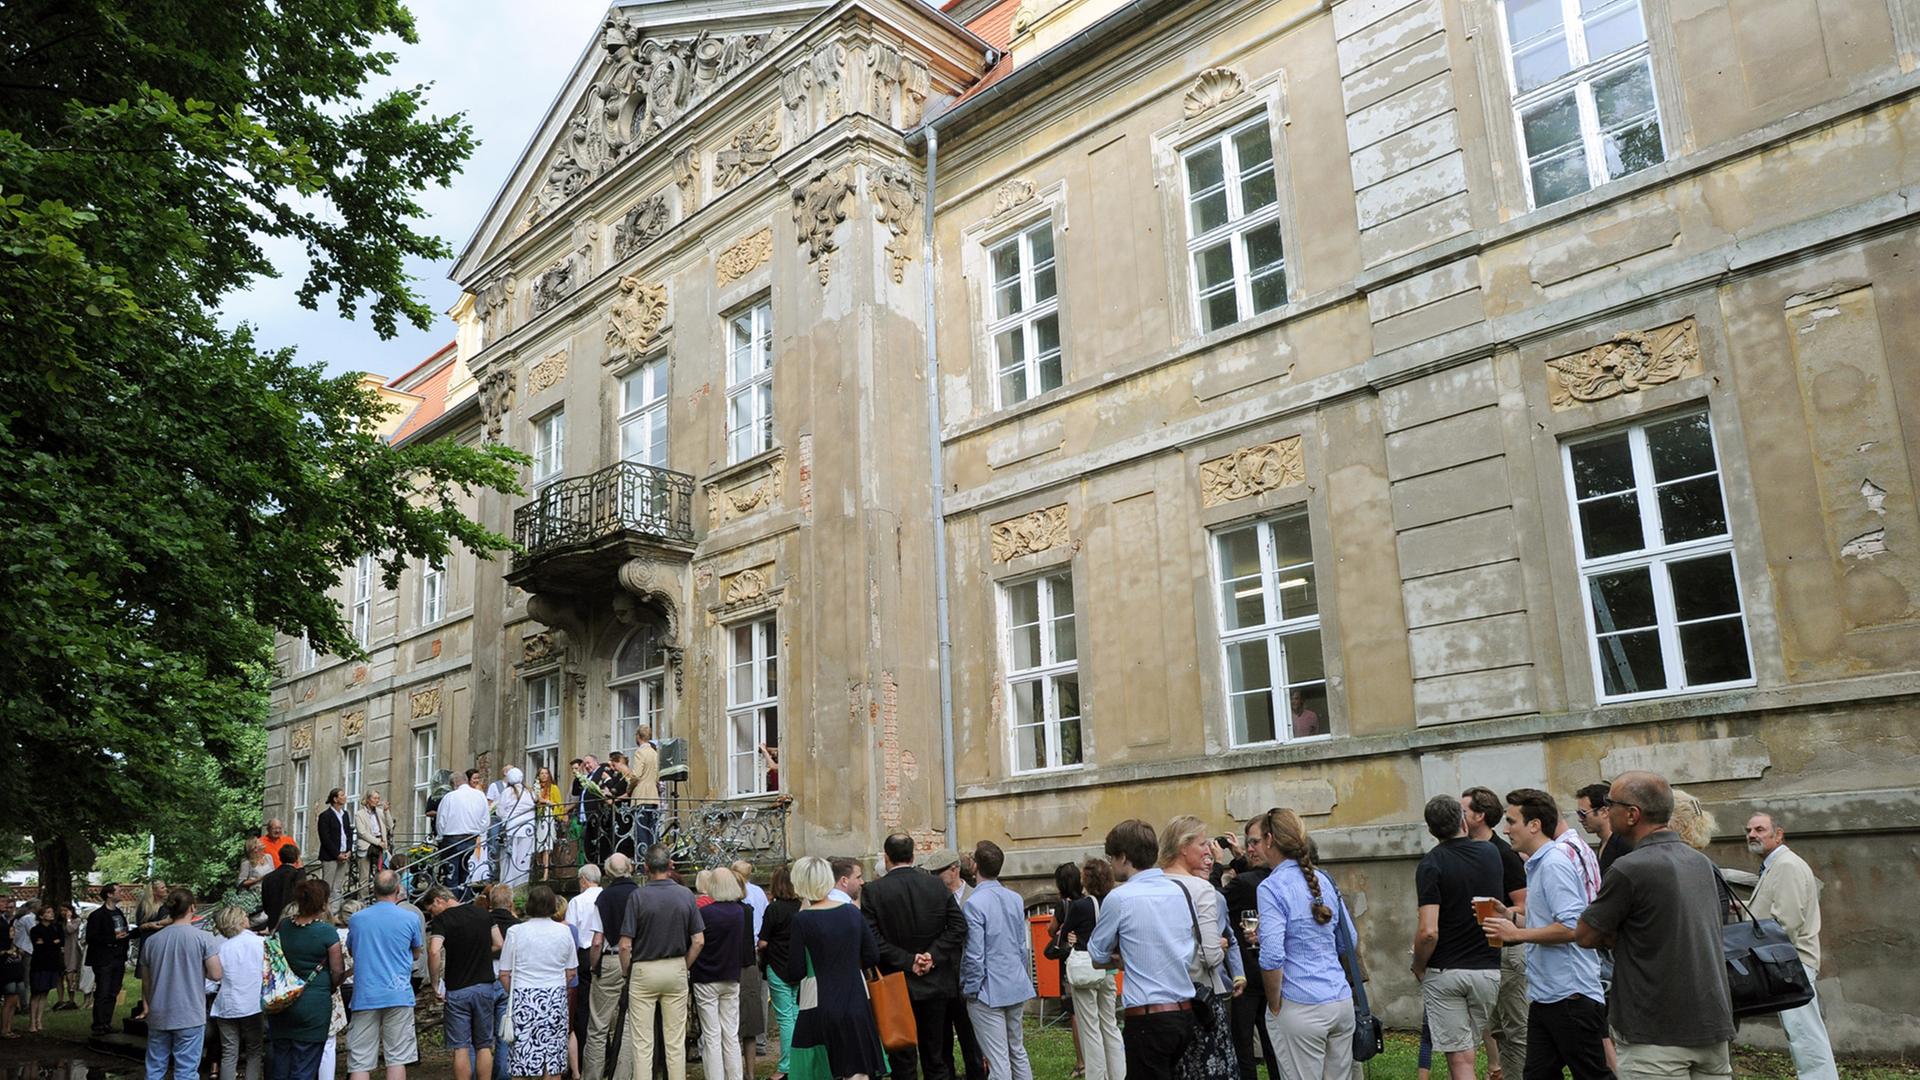 Kunstinteressierte vor dem Schloss in Roskow in Brandenburg: Sie warten auf die Eröffnung der Ausstellung "Rohkunstbau"; Aufnahme vom August 2013